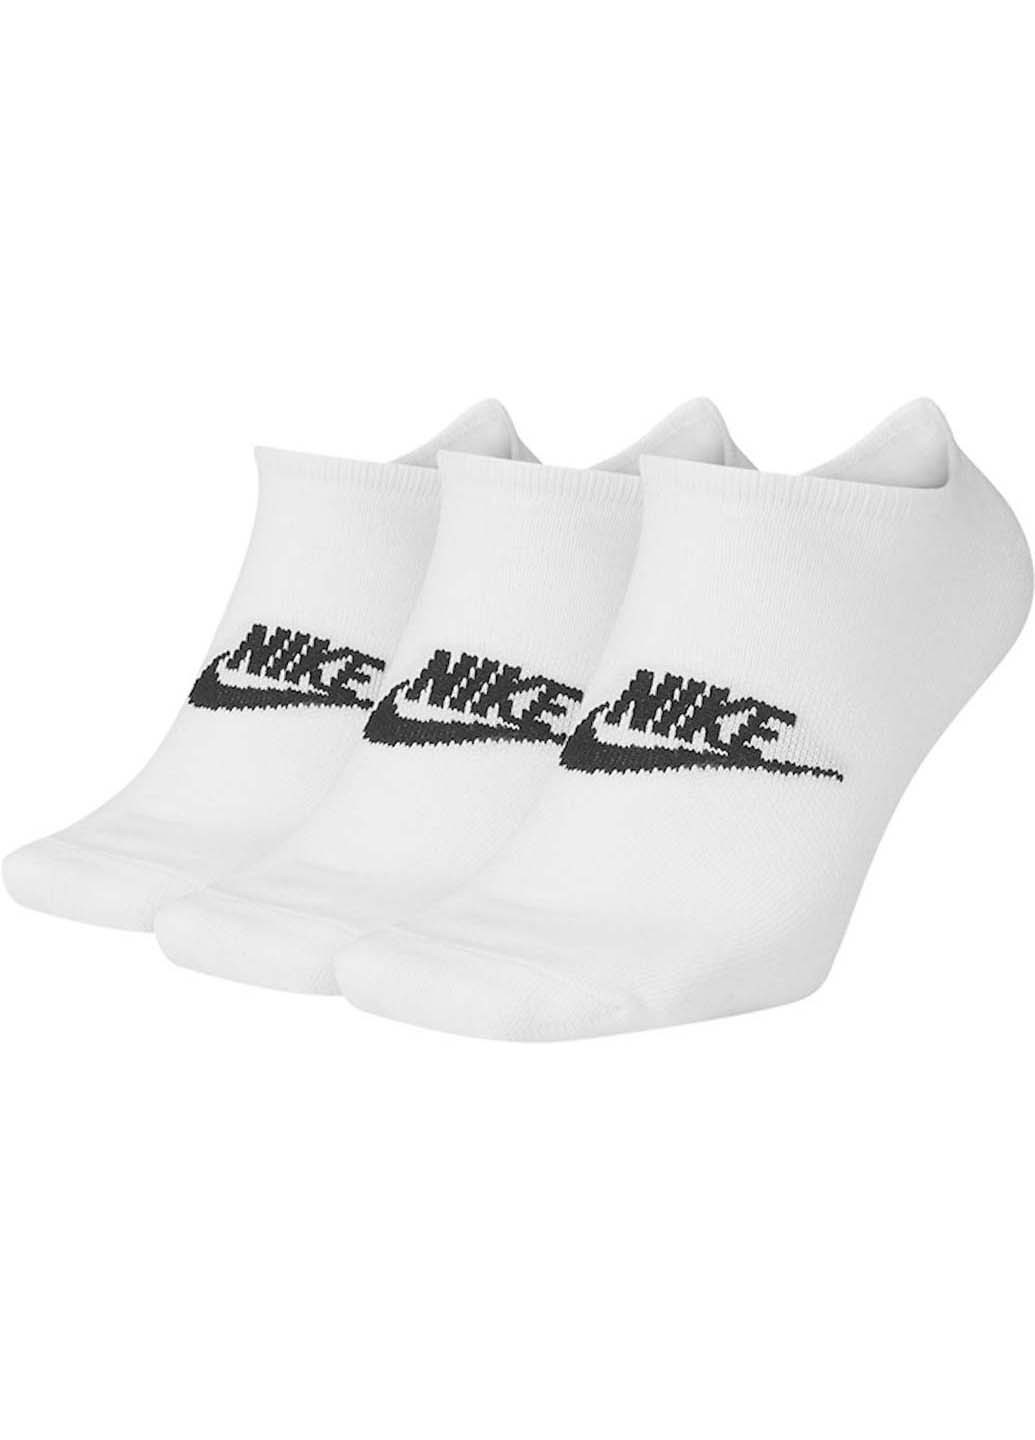 Носки Nike no show everyday essential 3-pack (256963253)